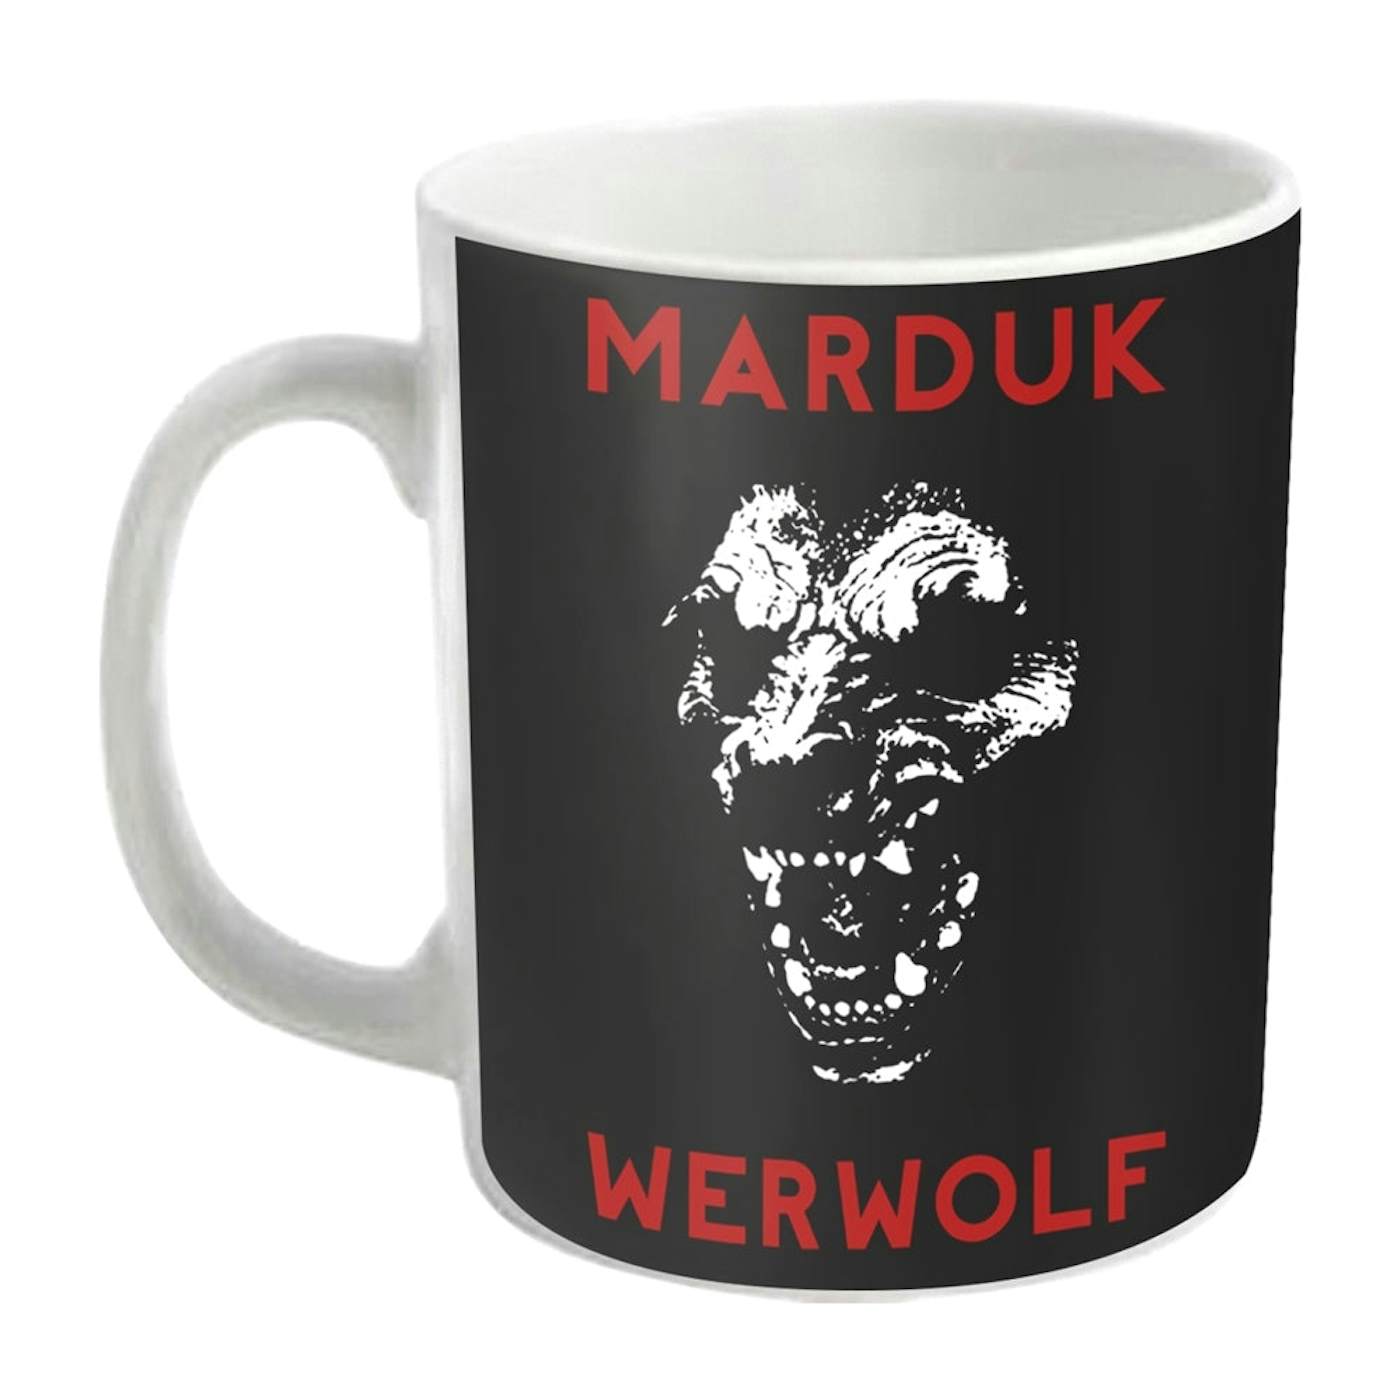 Marduk Mug - Werwolf